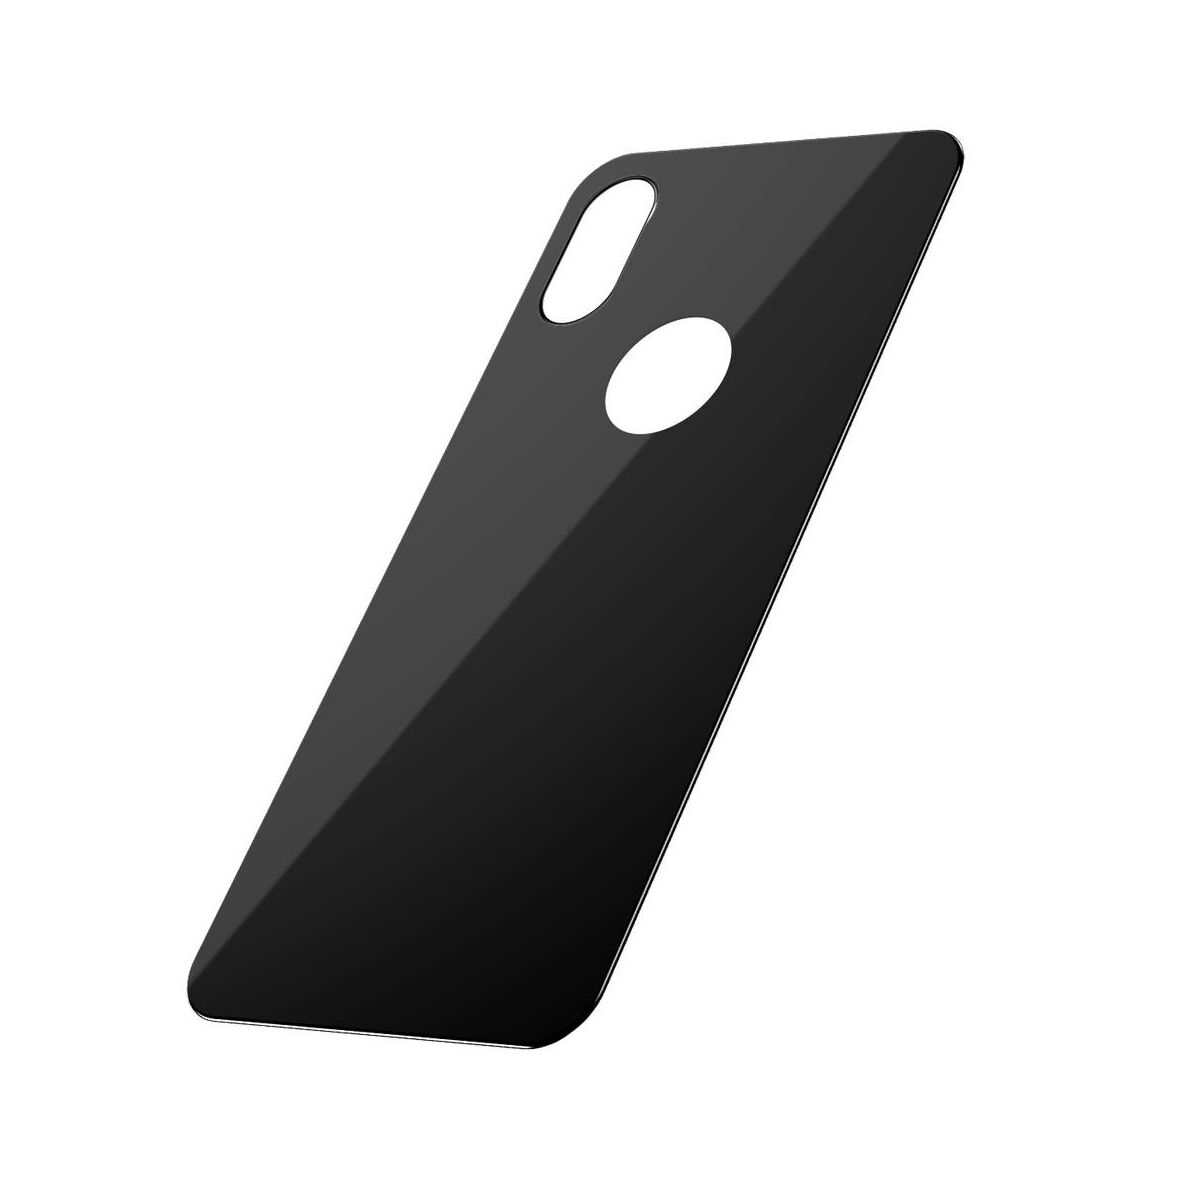 Kép 3/9 - Baseus iPhone XS Max (6.5") 0.3 mm, teljes lefedésre, edzett üveg hátlap védő fólia, fekete (SGAPIPH65-BM01)